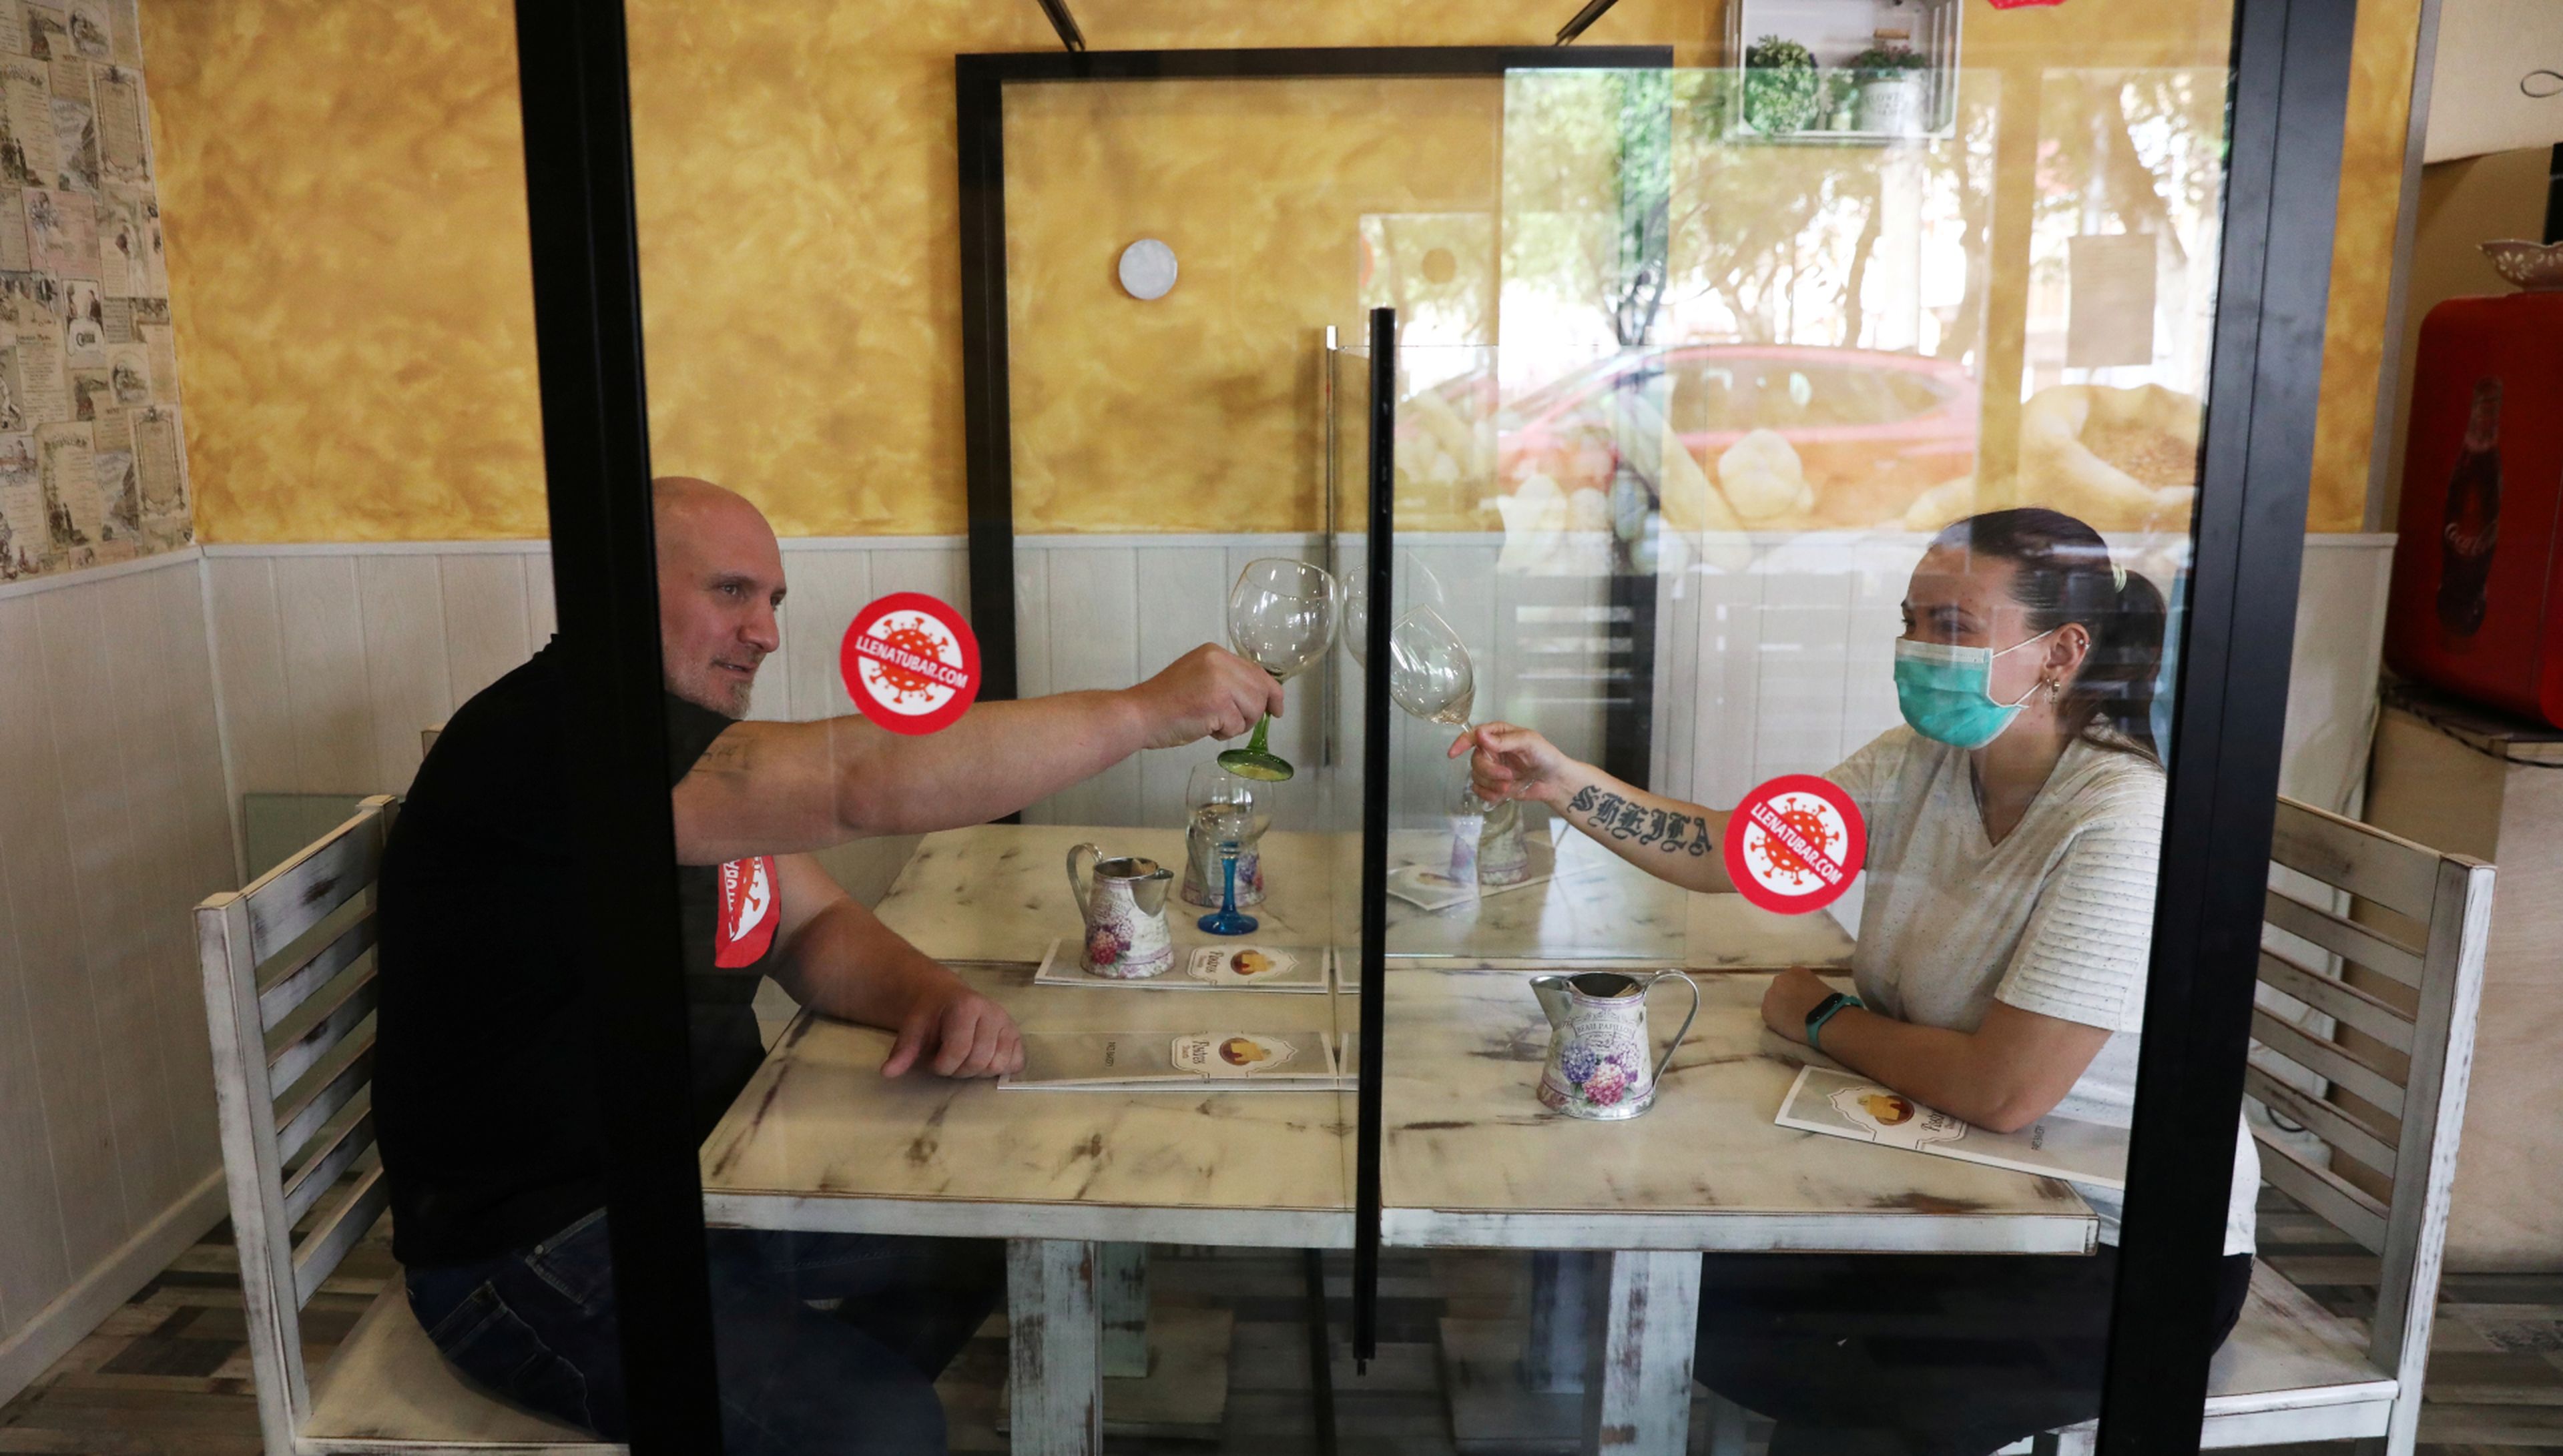 Hosteleros de Leganés (Madrid) prueban el uso de mamparas en sus bares como protección ante el coronavirus